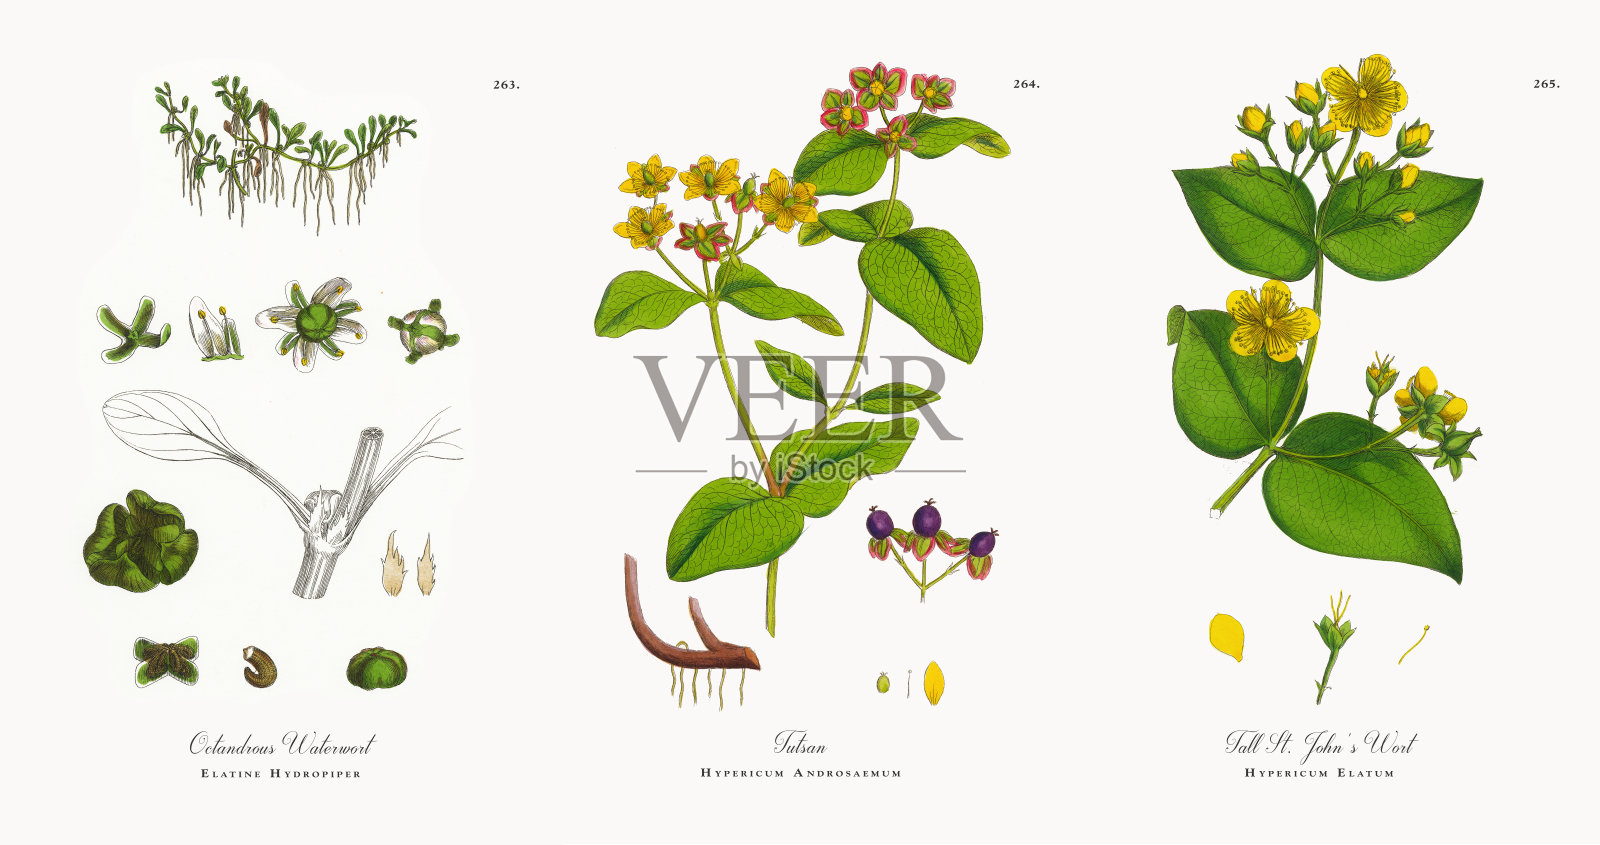 八角莲-神农架植物-图片